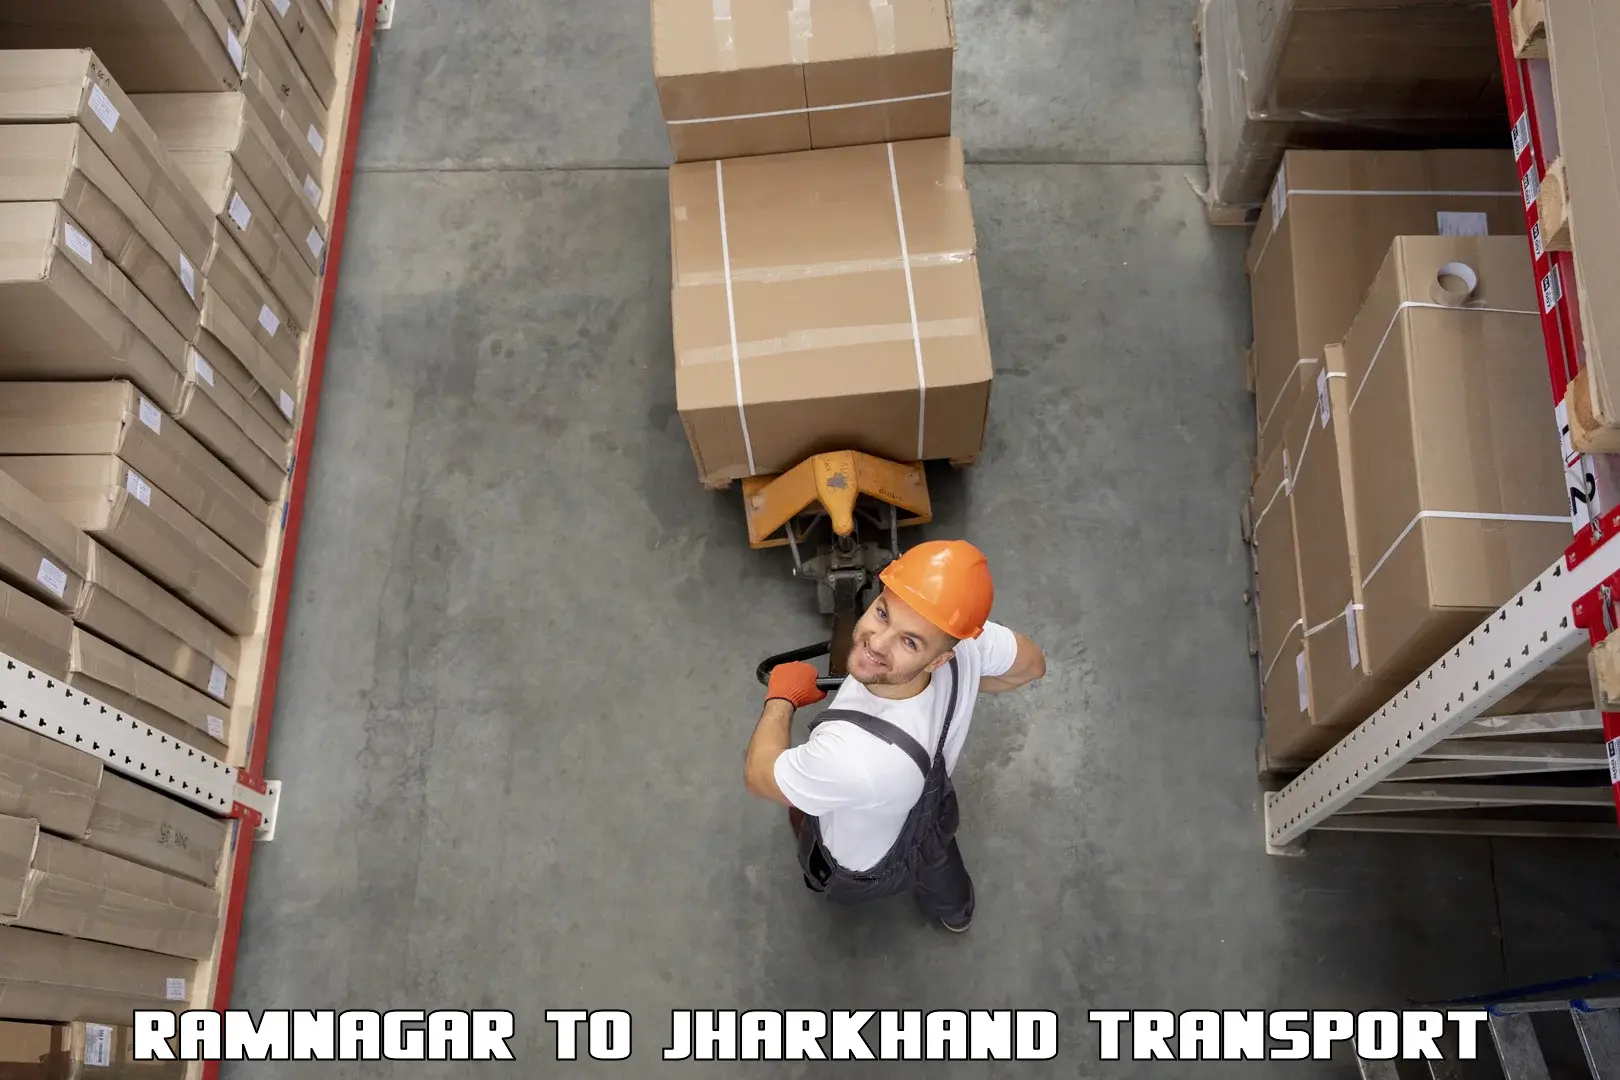 Transport shared services Ramnagar to Jamshedpur